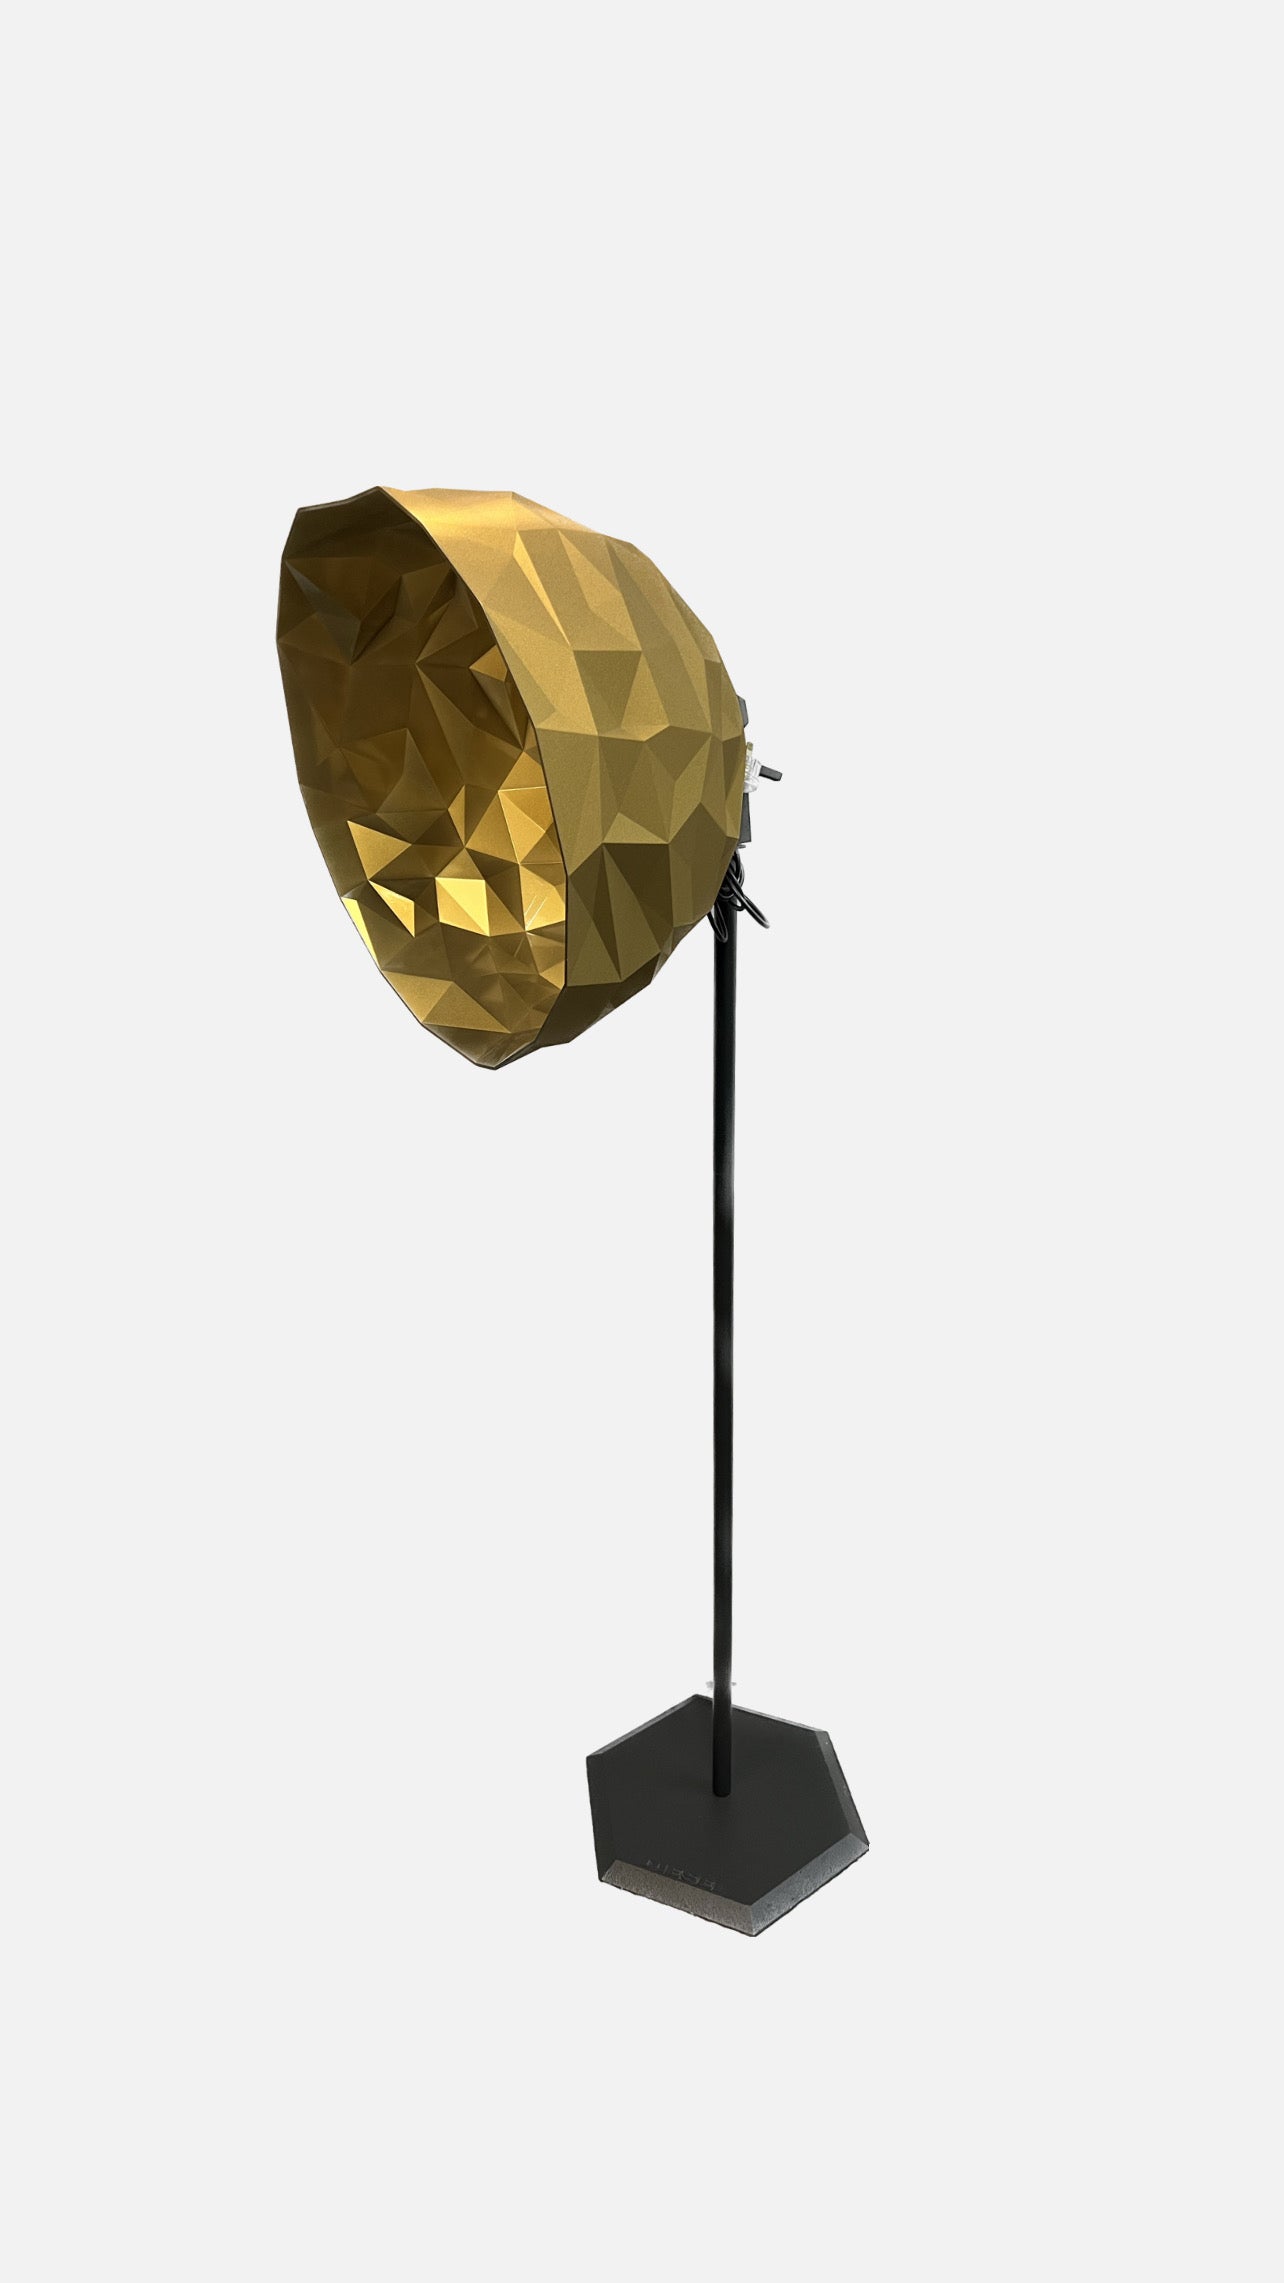 Diesel Rock Floor Lamp by Foscarini